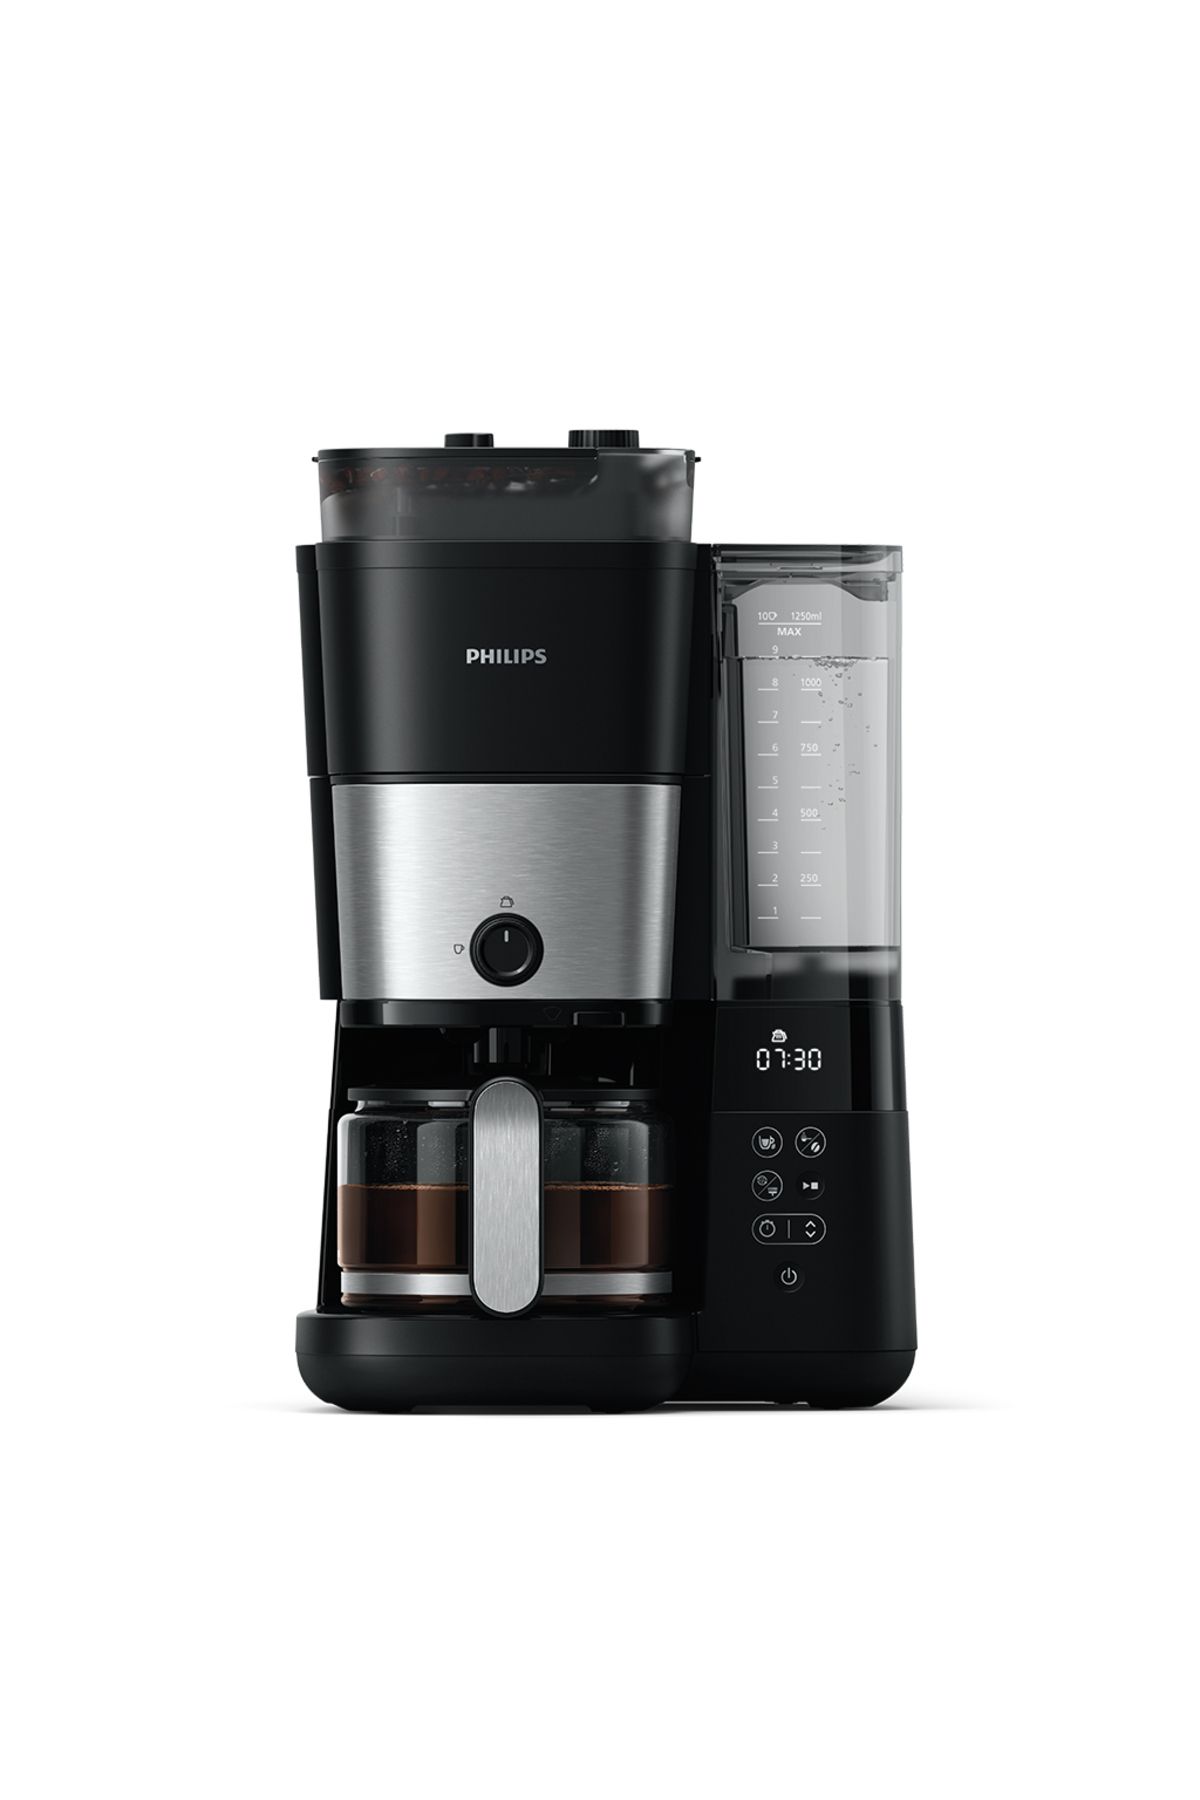 Philips Tam Otomatik Kahve Ve Espresso Makinesi+ 1 Kg Starbucks Filtre  Kahve Hediye Fiyatları, Özellikleri ve Yorumları